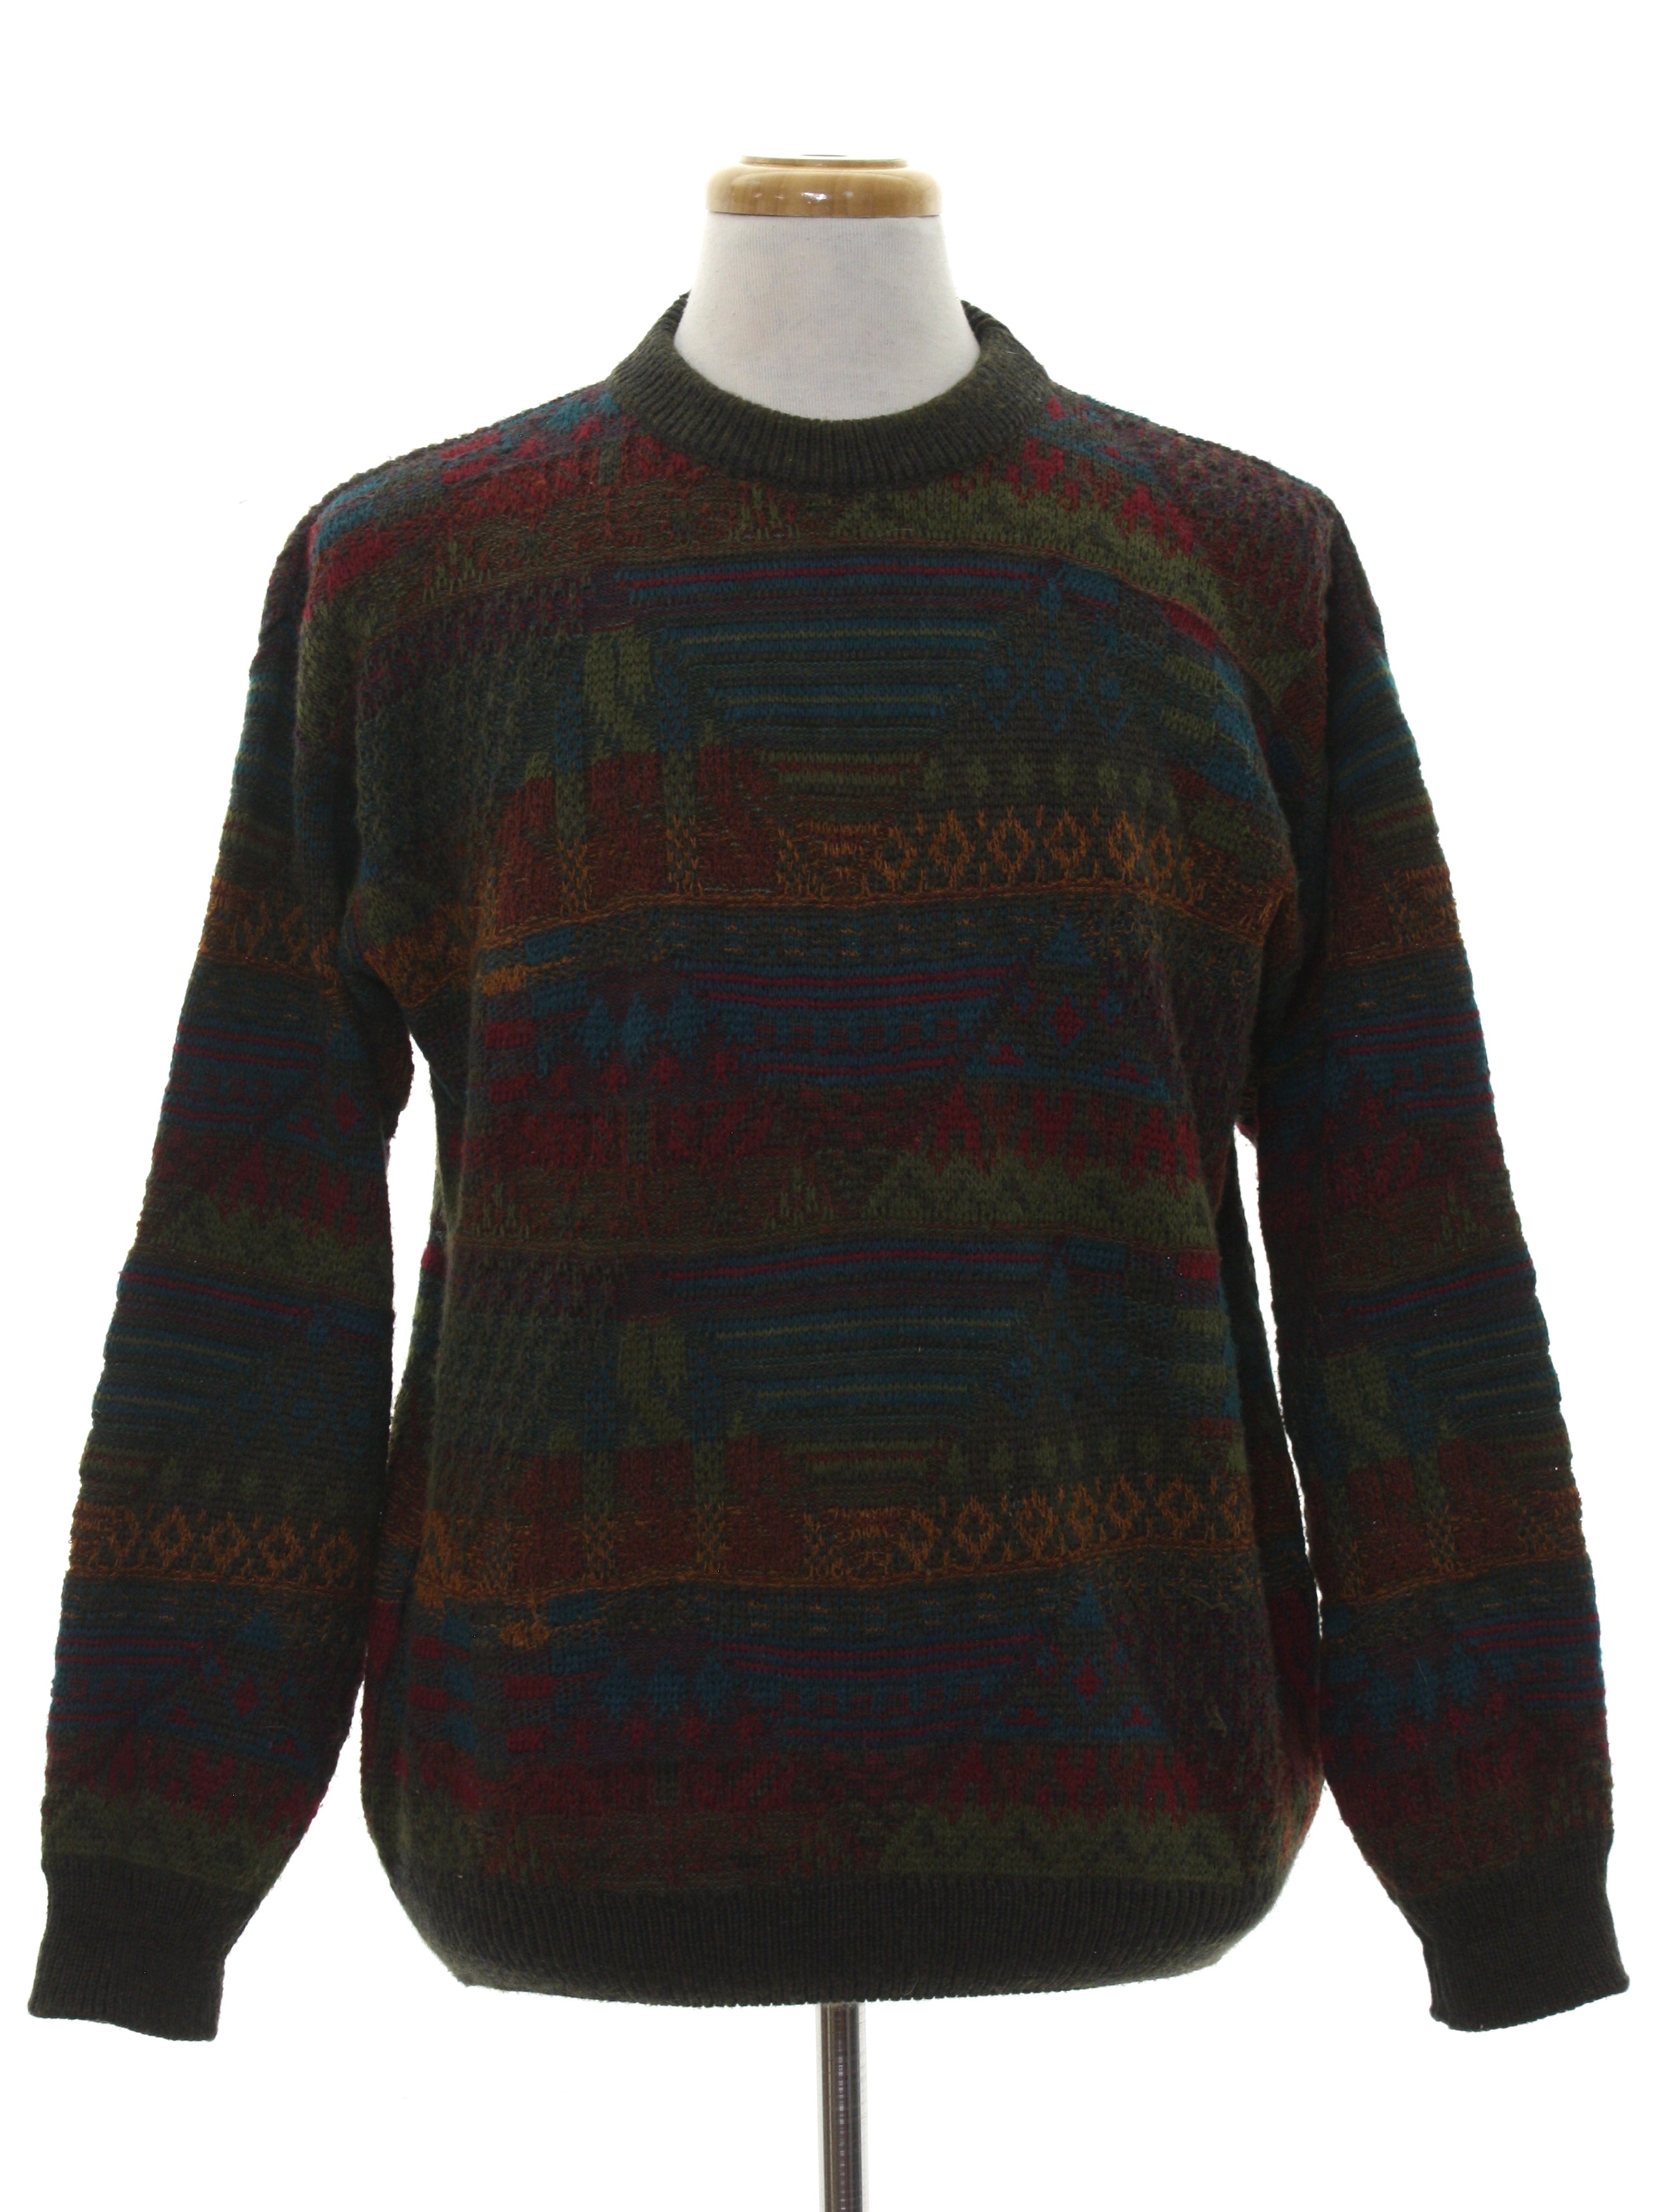 Retro 1980's Sweater (Noba) : 80s -Noba- Mens dark khaki green, orange ...